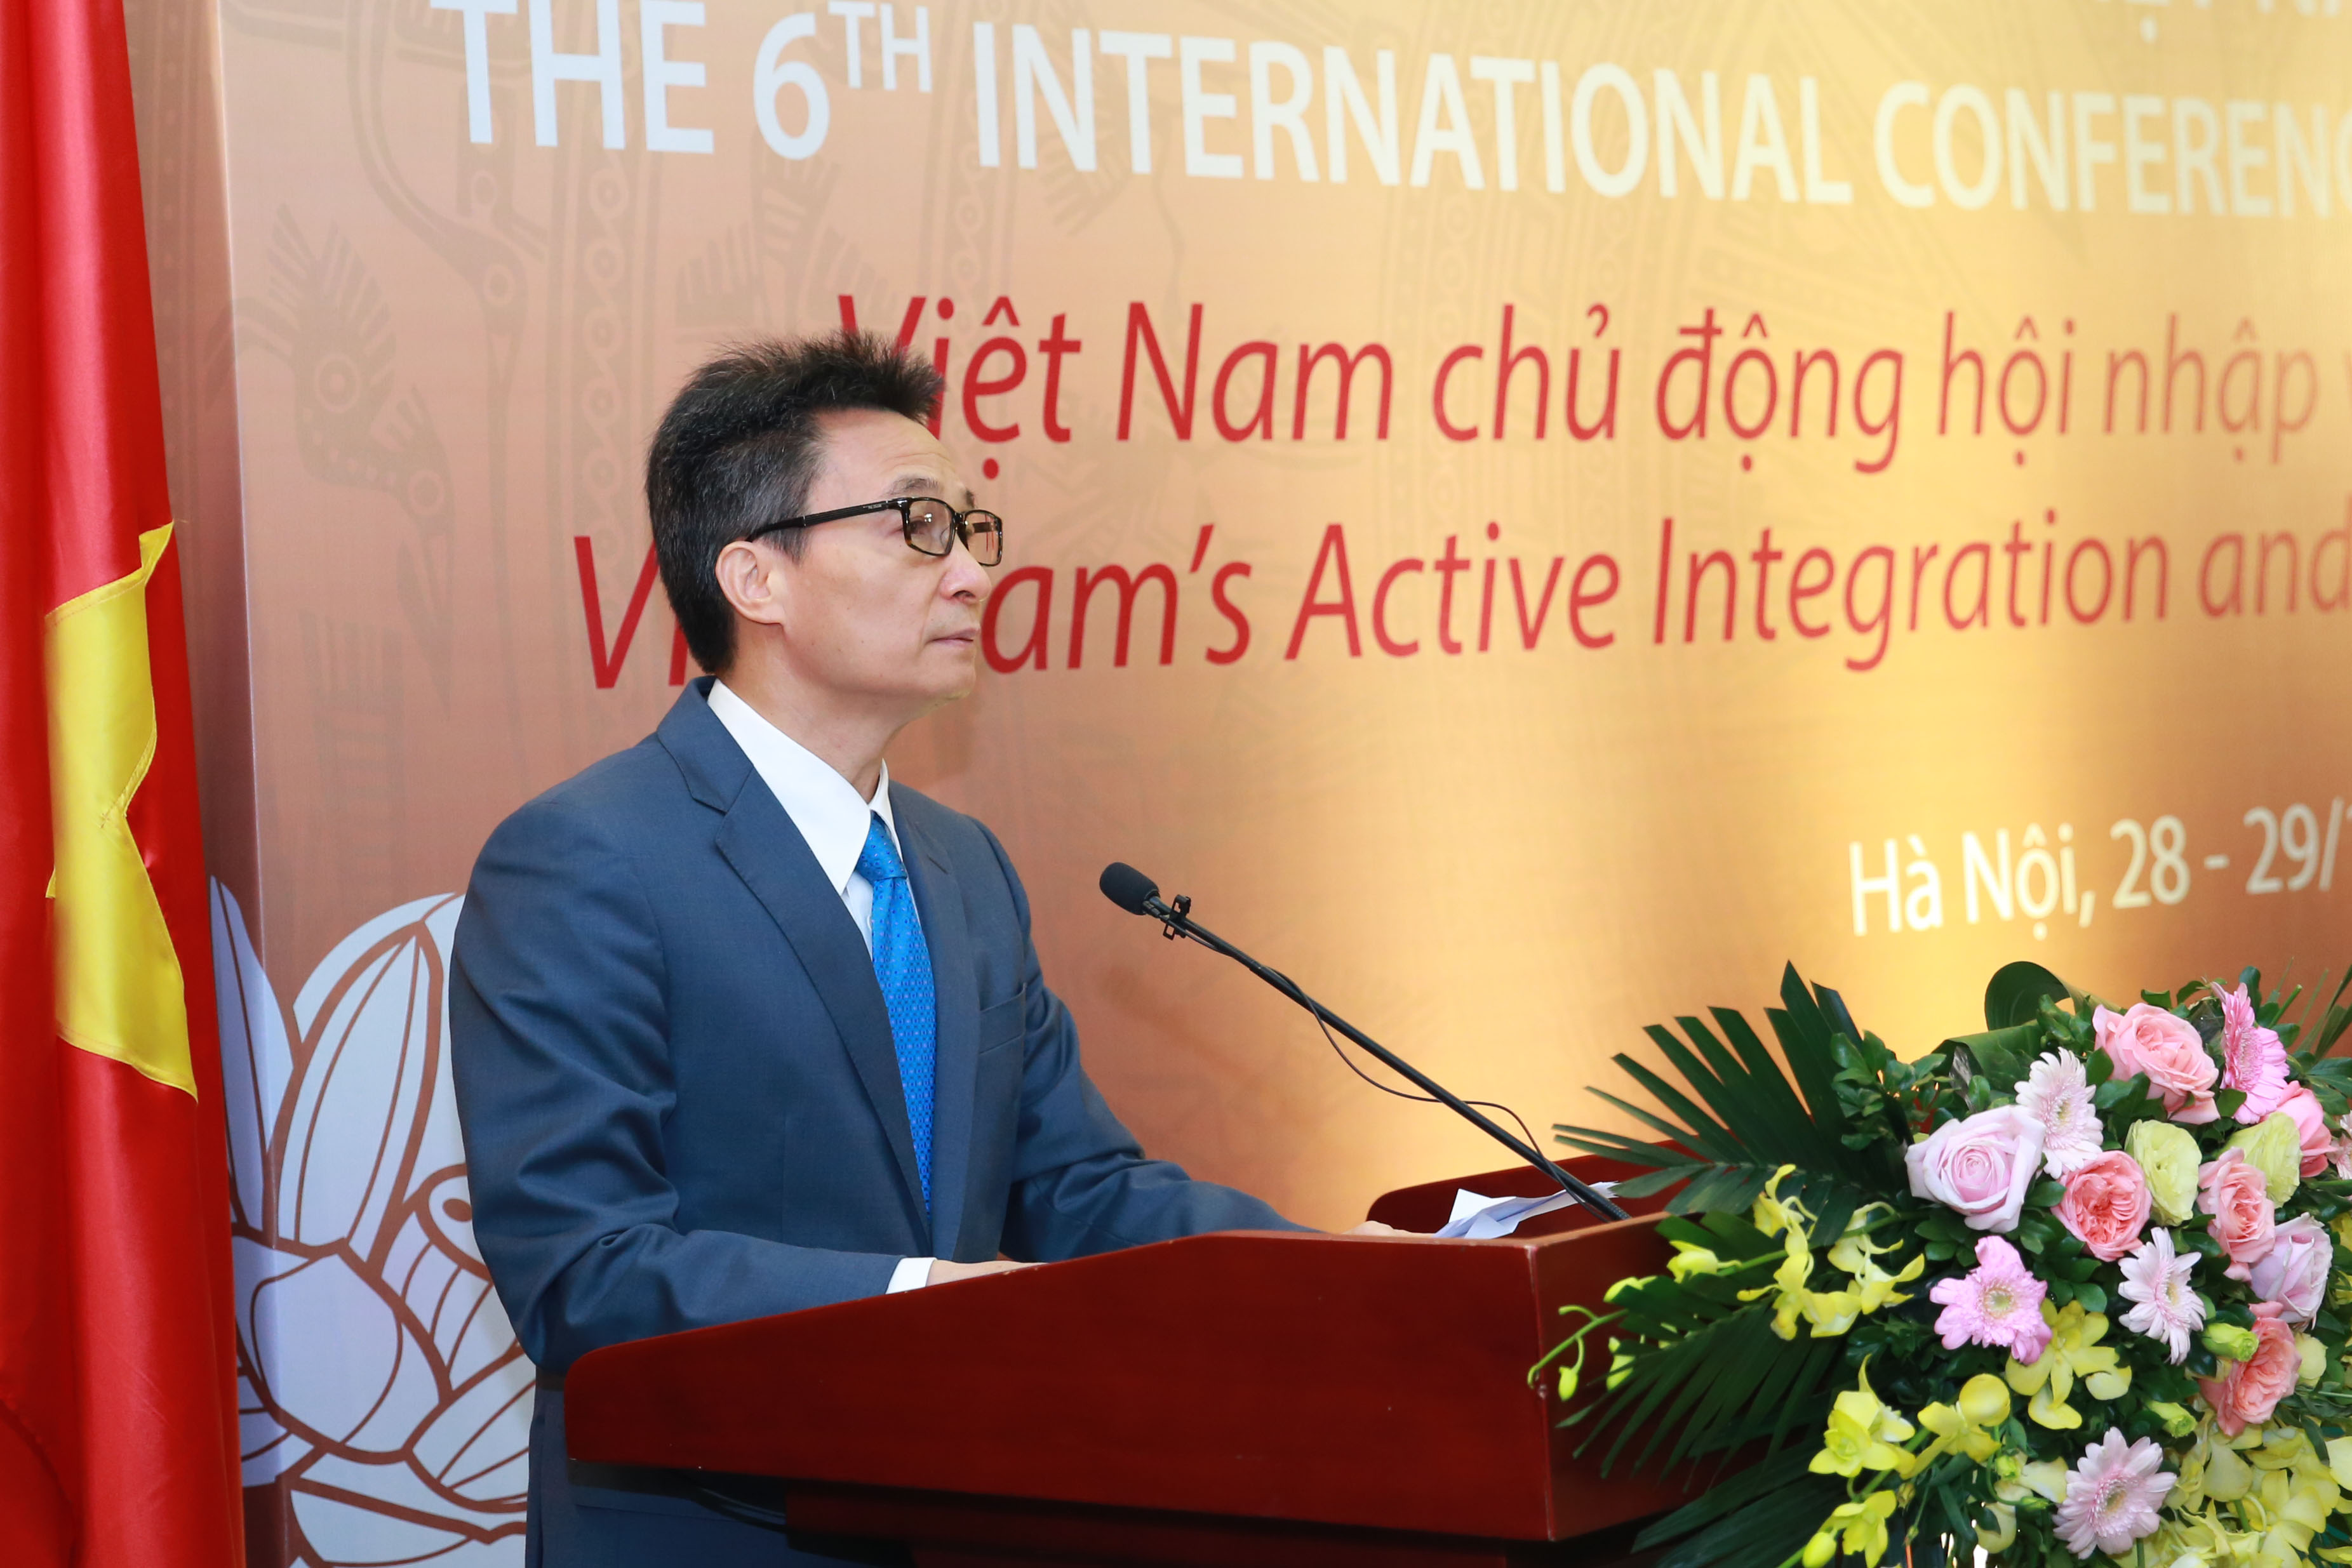 Việt Nam là một đất nước có tiềm năng phát triển vô vàn. Với sự cổ vũ của chính phủ và nỗ lực của người dân, nền kinh tế đang phát triển nhanh chóng. Ngoài ra, các lĩnh vực mà Việt Nam đang khai thác như khoa học công nghệ, năng lượng và du lịch đều có tiềm năng lớn cho sự phát triển trong tương lai.